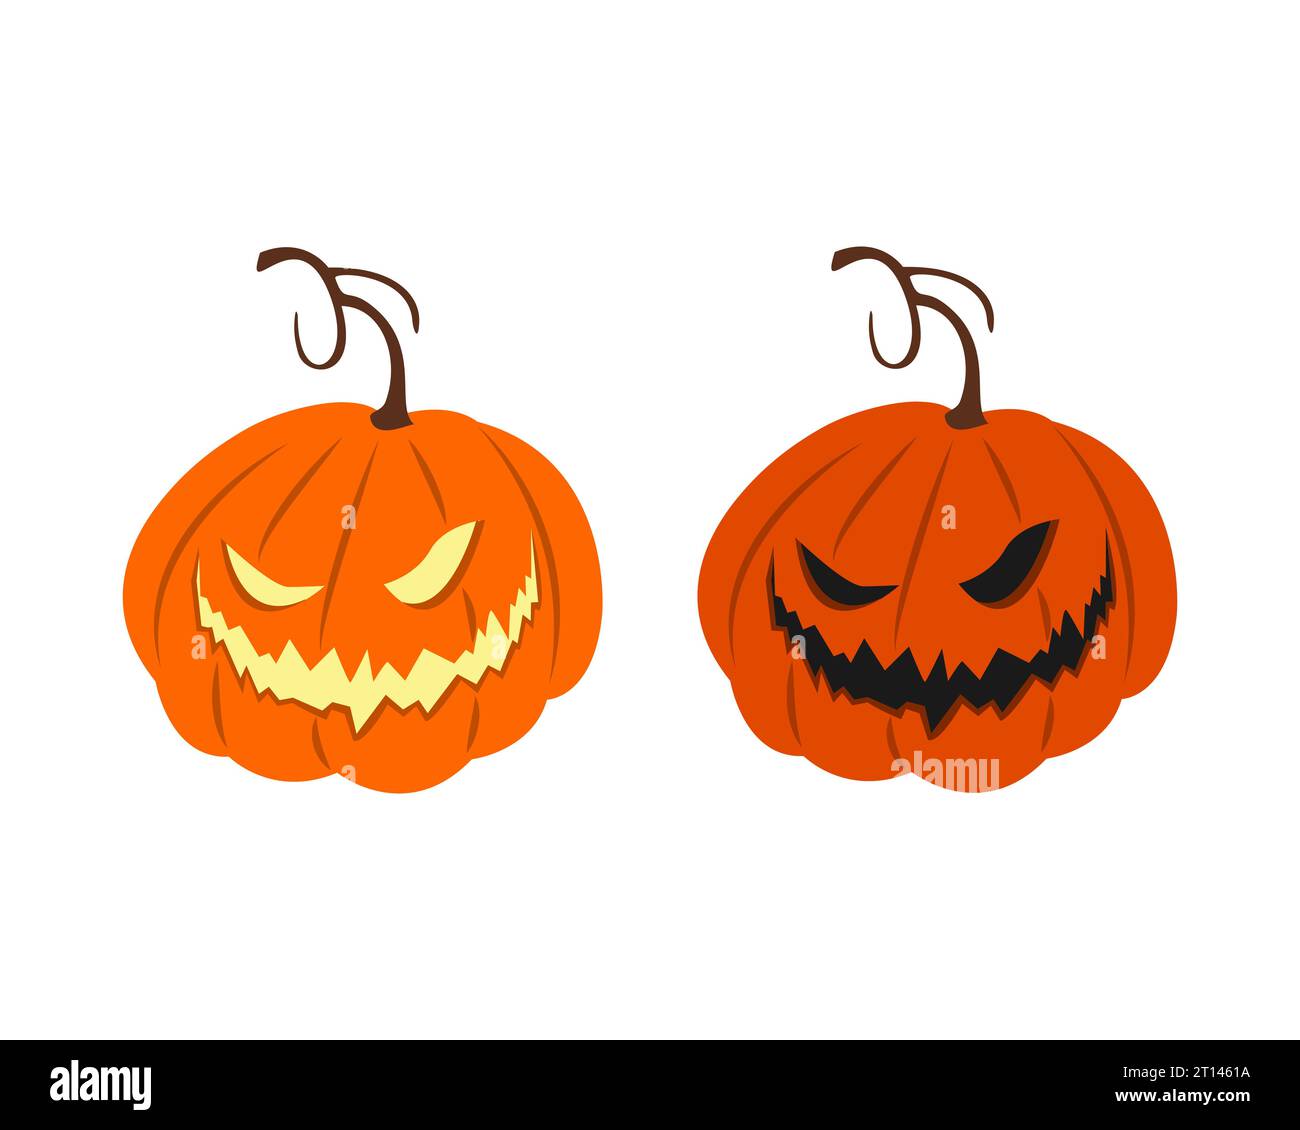 Zucca orribile e spaventosa, sorriso inquietante, elemento decorativo per Halloween. Illustrazione vettoriale Illustrazione Vettoriale